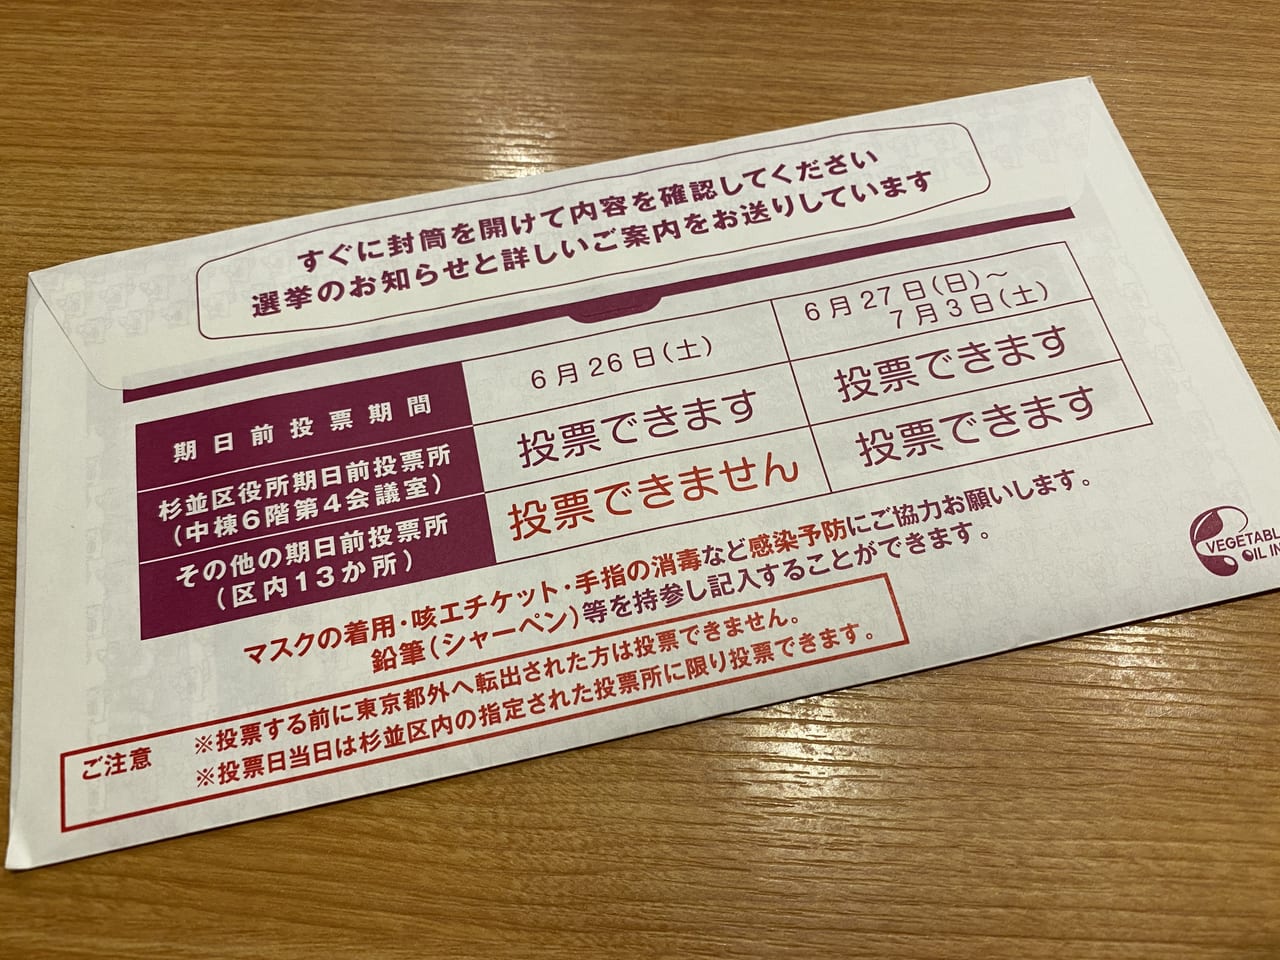 杉並区 忘れずに投票しましょう 令和3年7月4日 日 は東京都議会議員選挙投票日 予定のある方は期日前投票を 号外net 杉並区